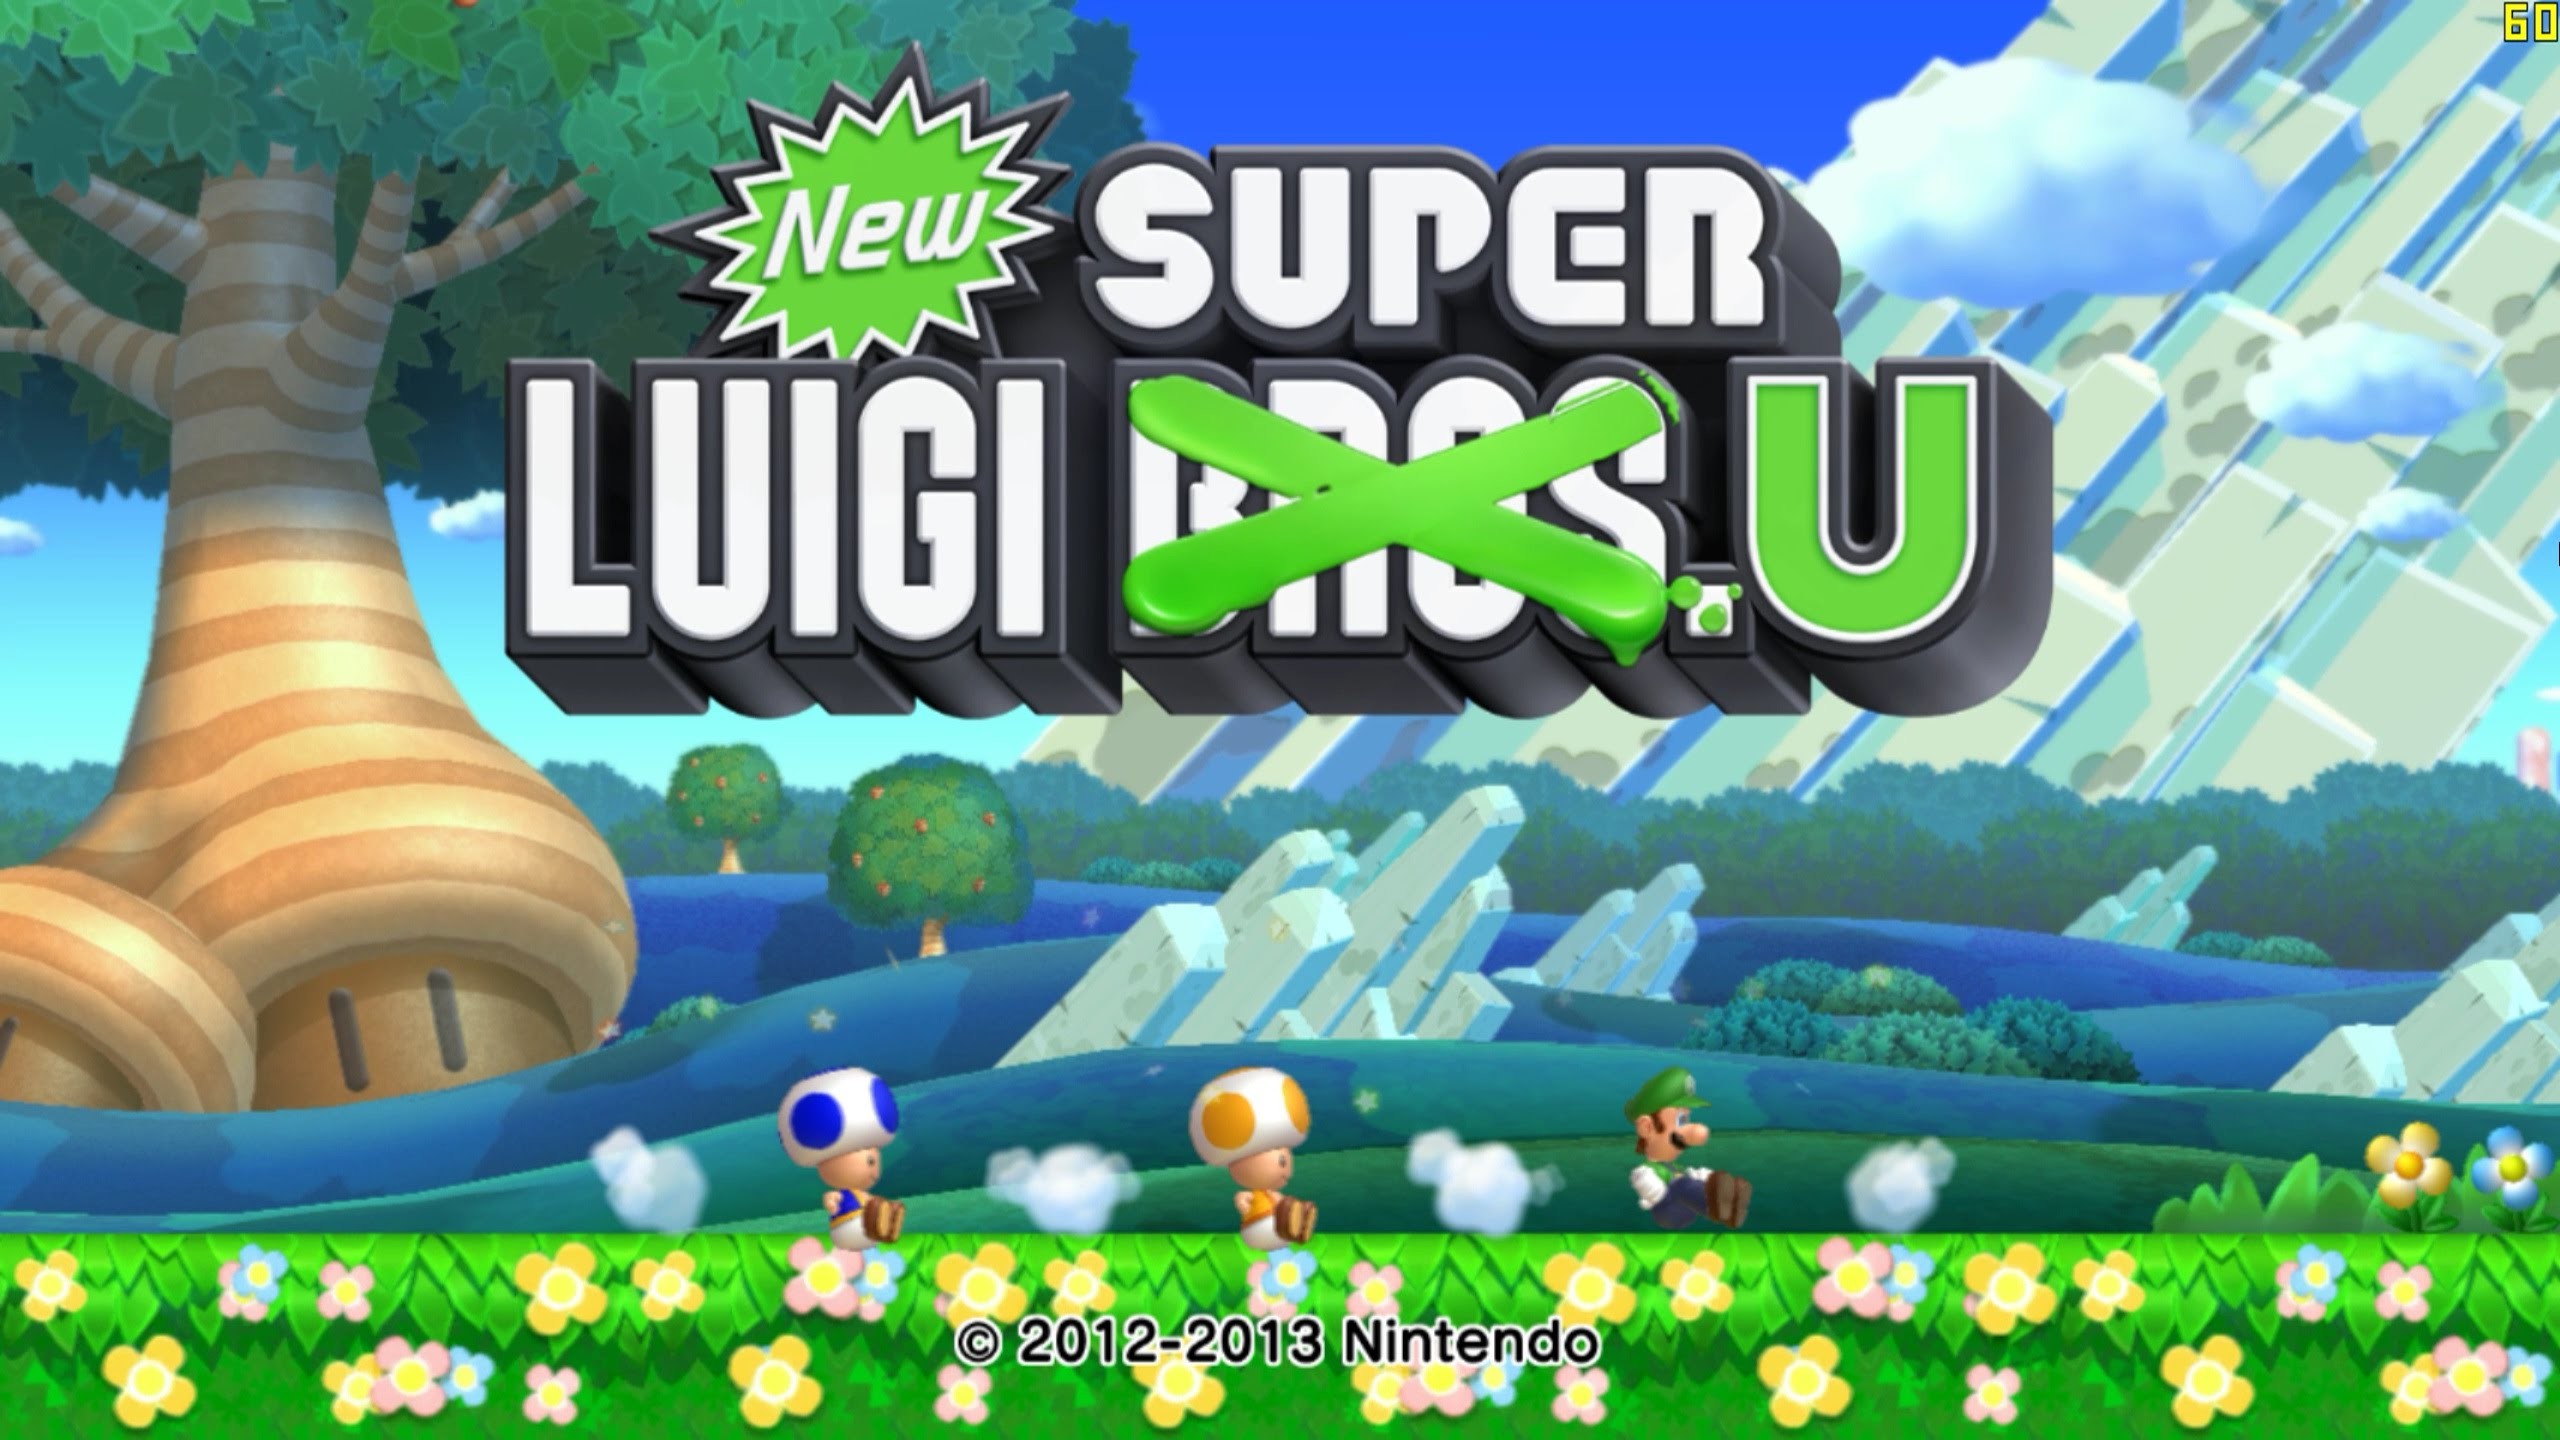 2560x1440 New Super Luigi U HD Wallpaper 12 - 2560 X 1440